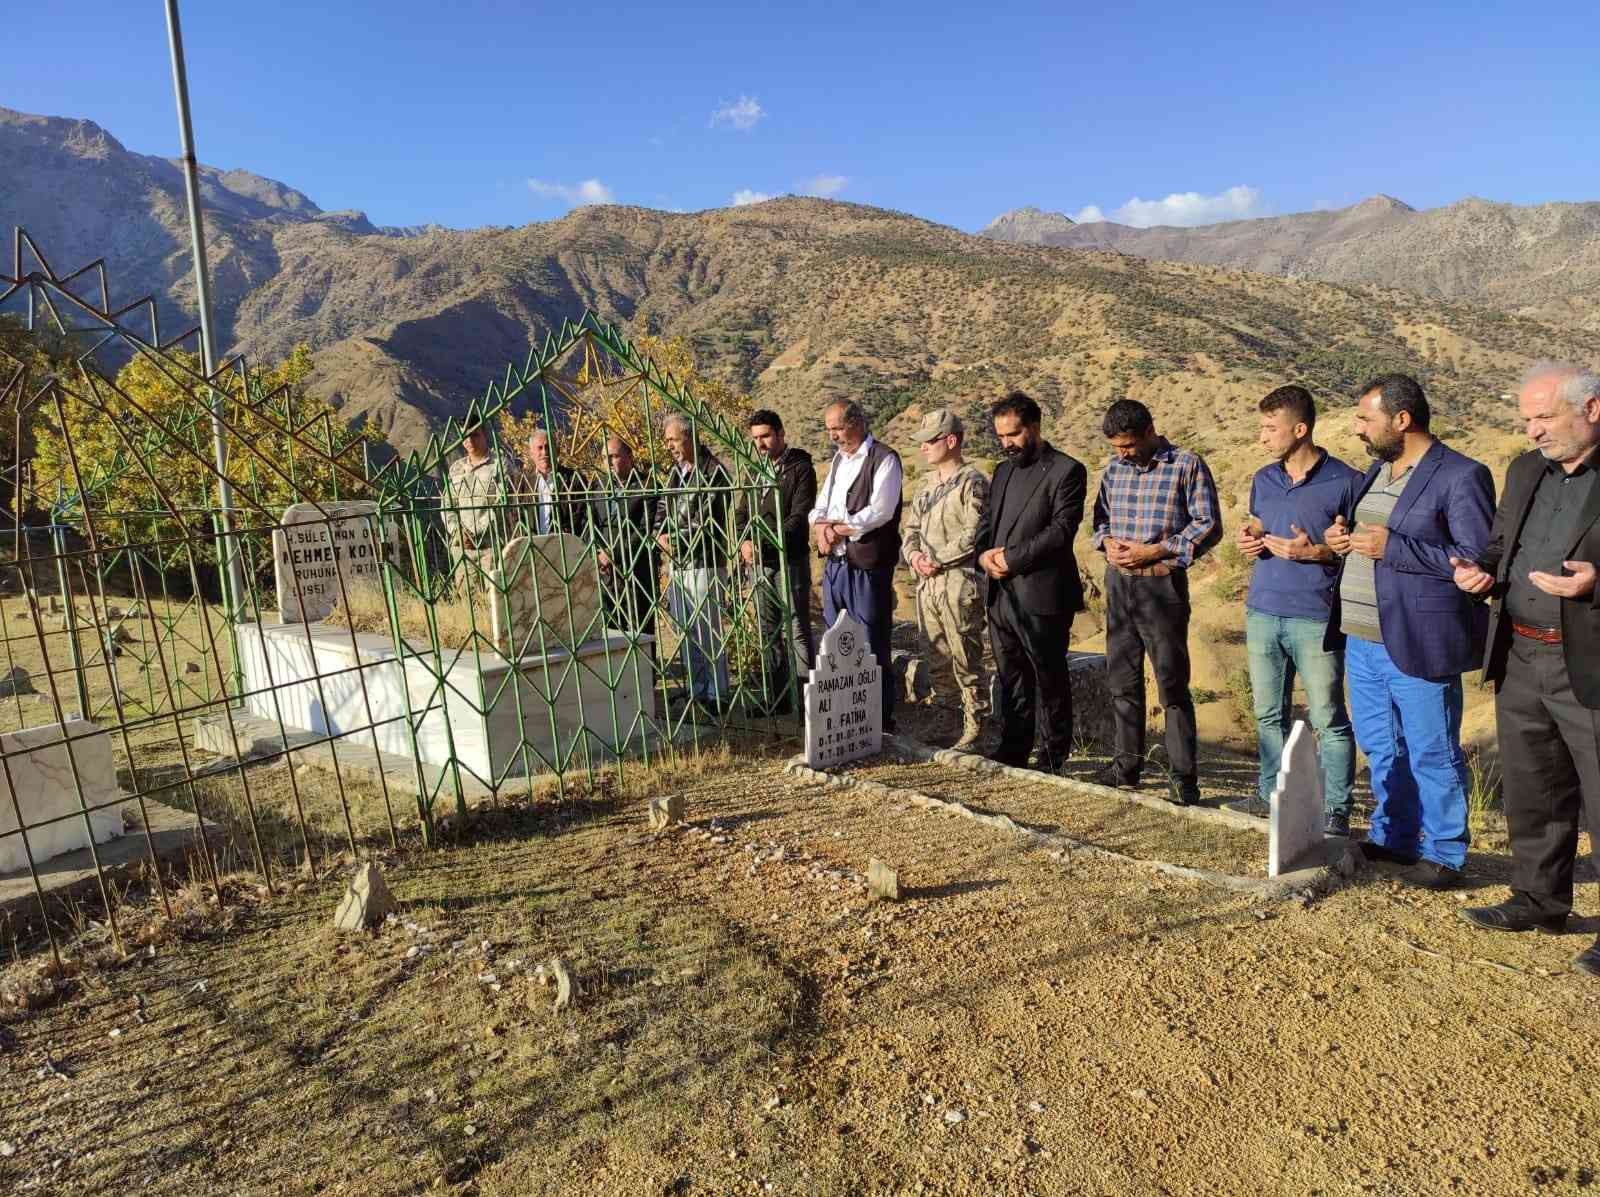 4 teröristi öldürdüğü çatışmada şehit olan güvenlik korucusu, mezarı başında anıldı #batman